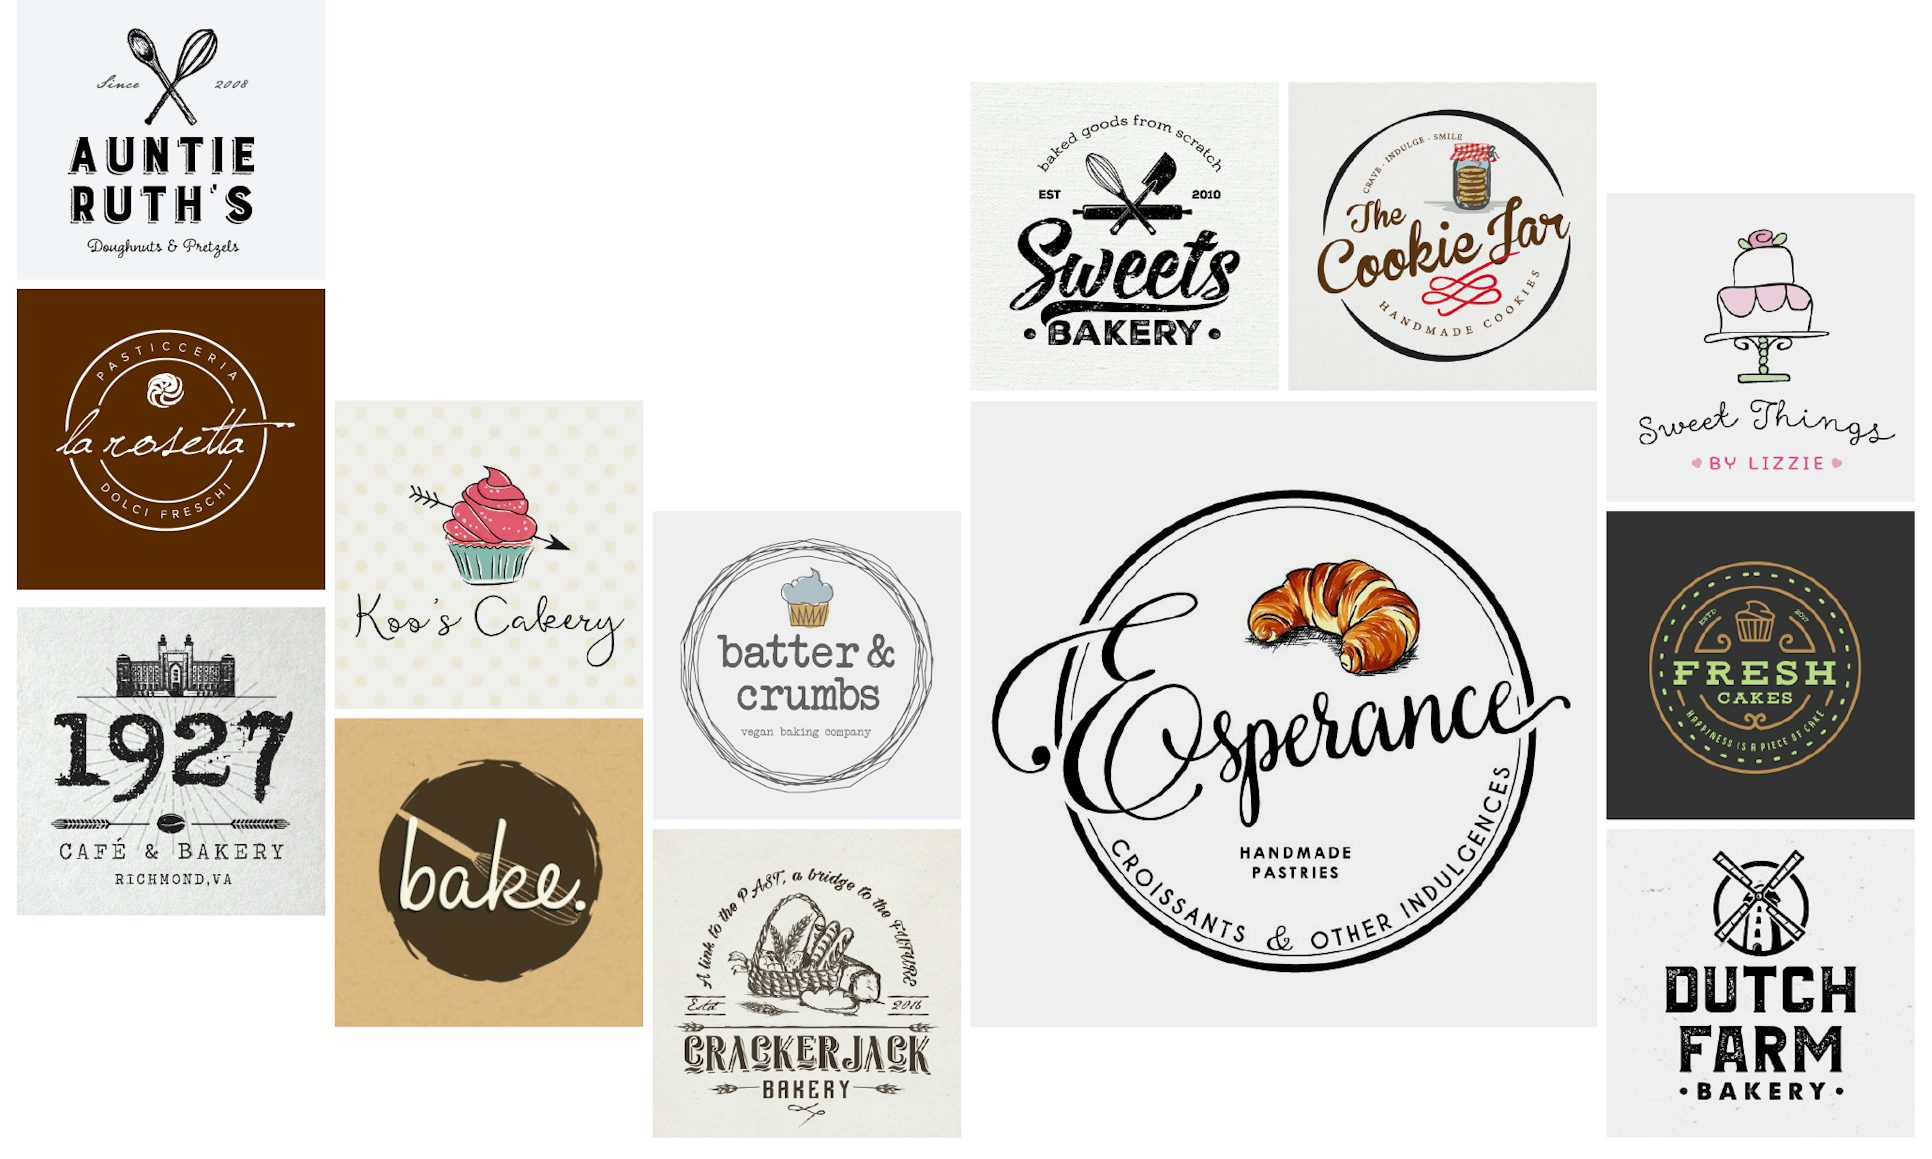 logo design for bakery